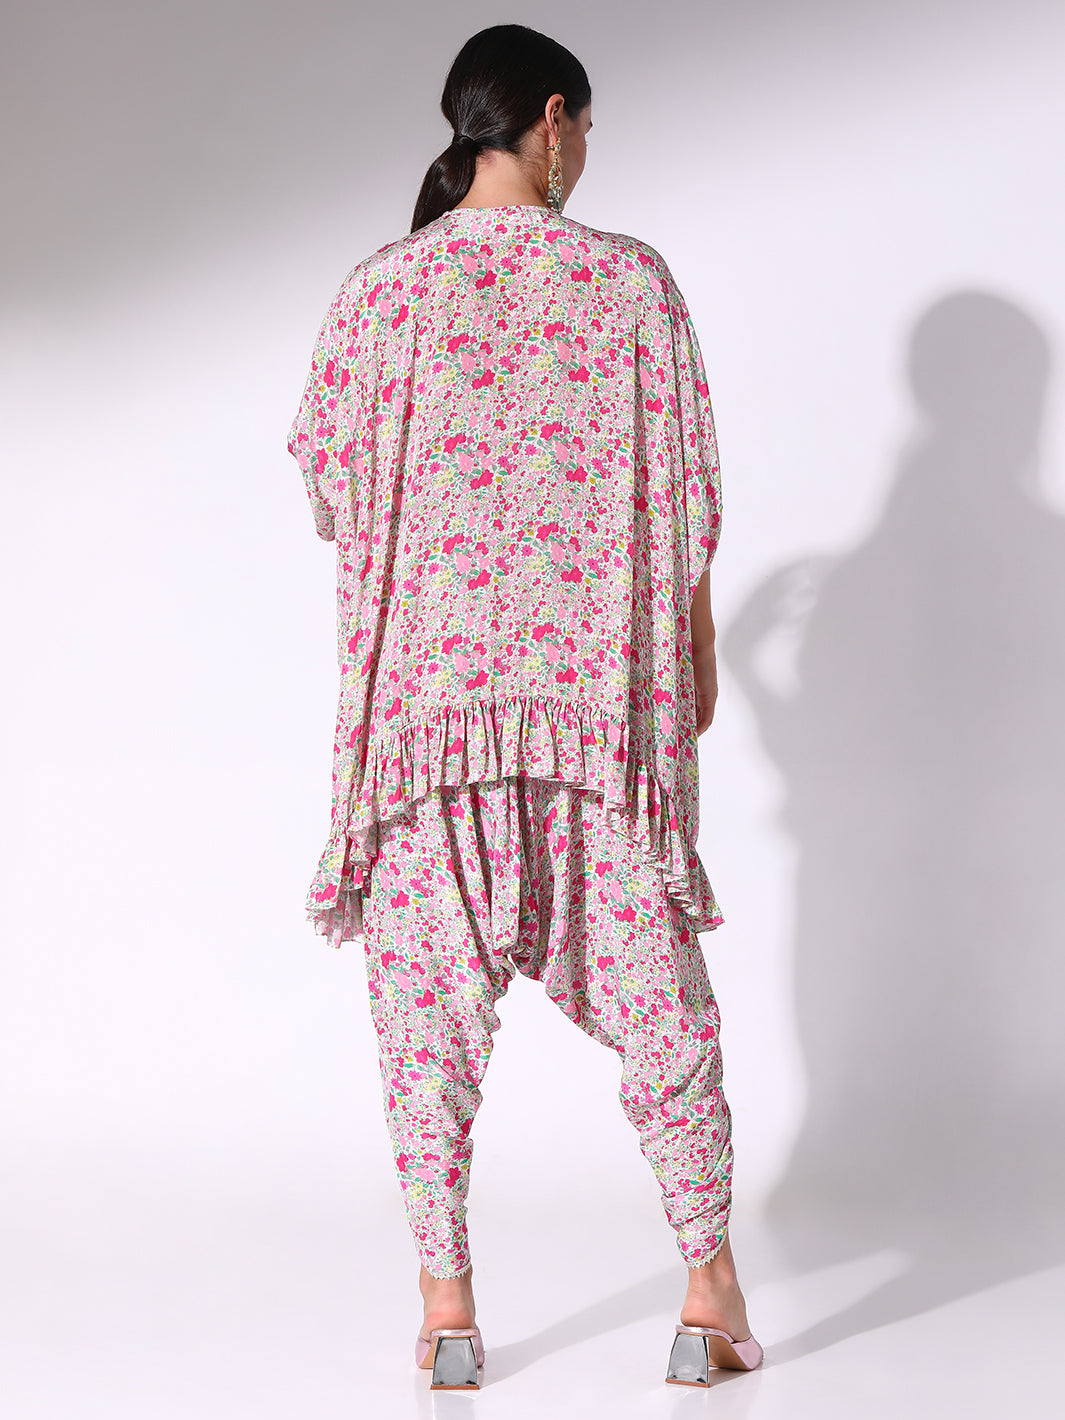 Brown printed dhoti – The Pajama Factory